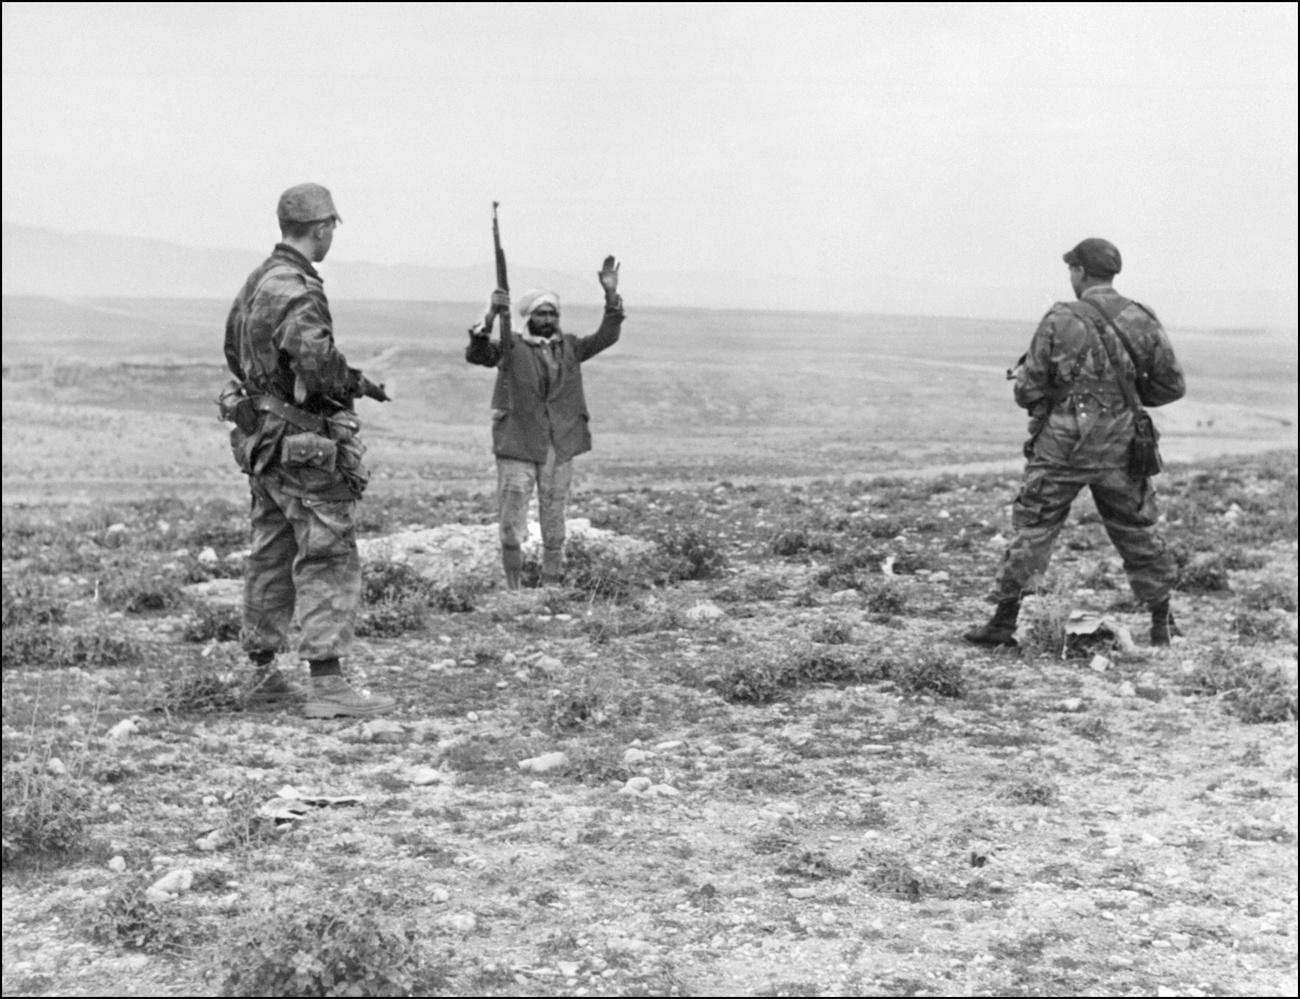 Un indépendantiste algérien est arrêté, en janvier 1958, par deux militaires français lors de la guerre d'Algérie.